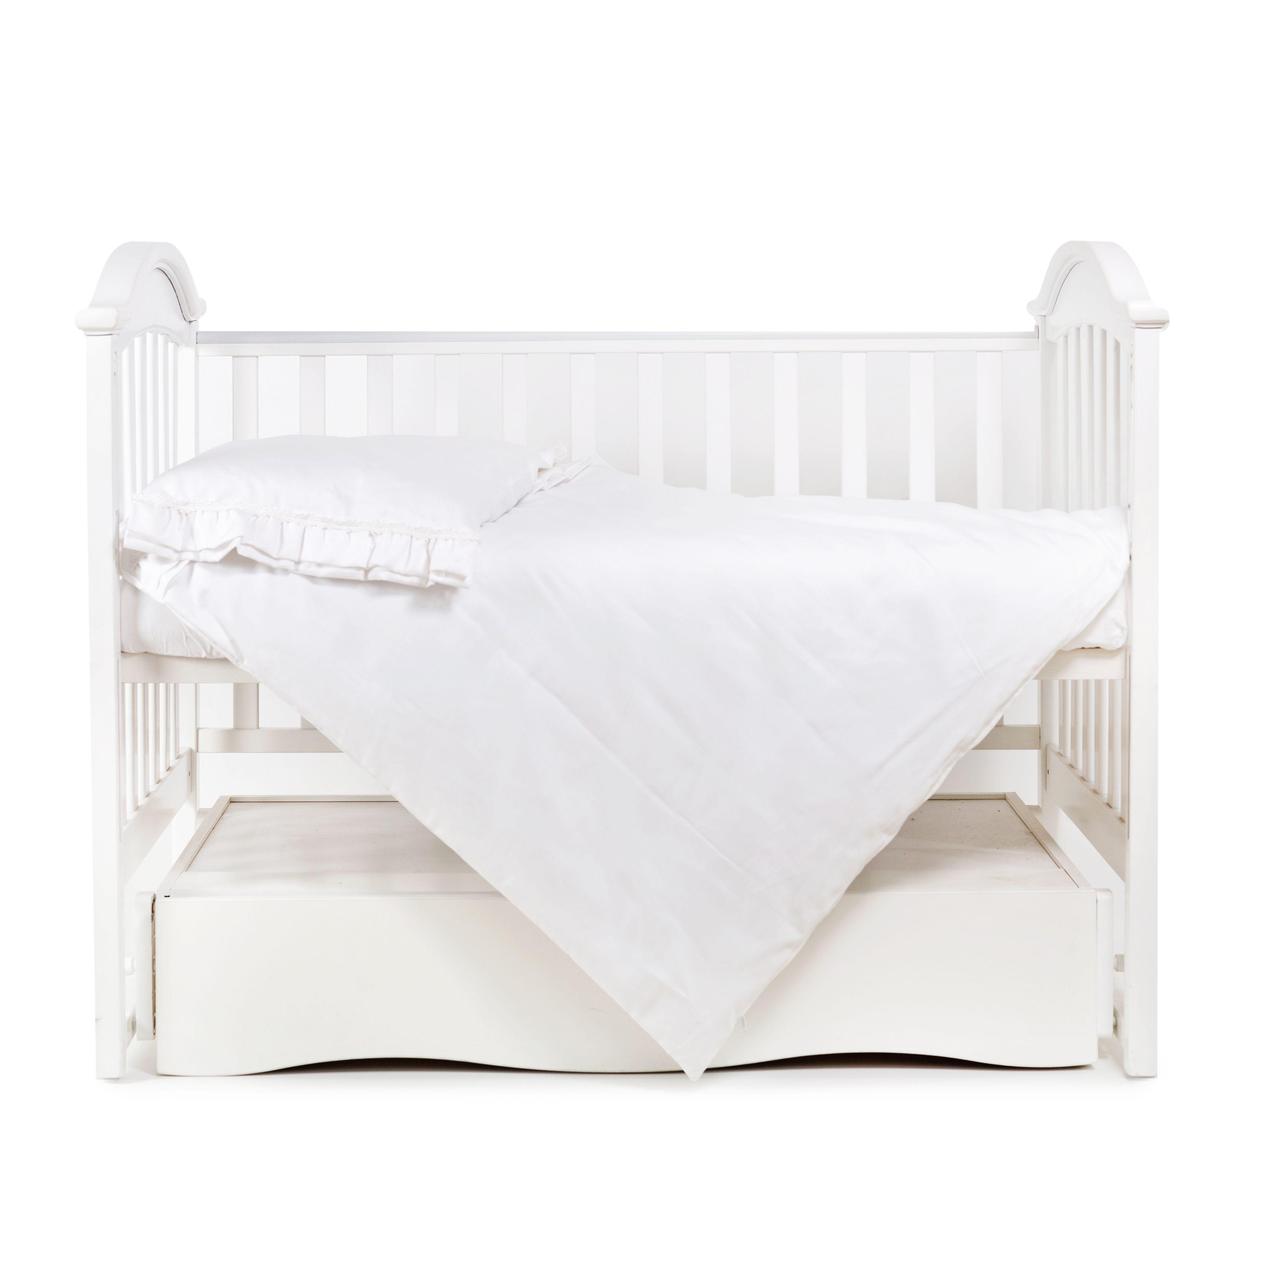 Дитячий набір змінної постільної білизни в ліжечко Twins Classic, 3 елементи, 120х60 см, білий